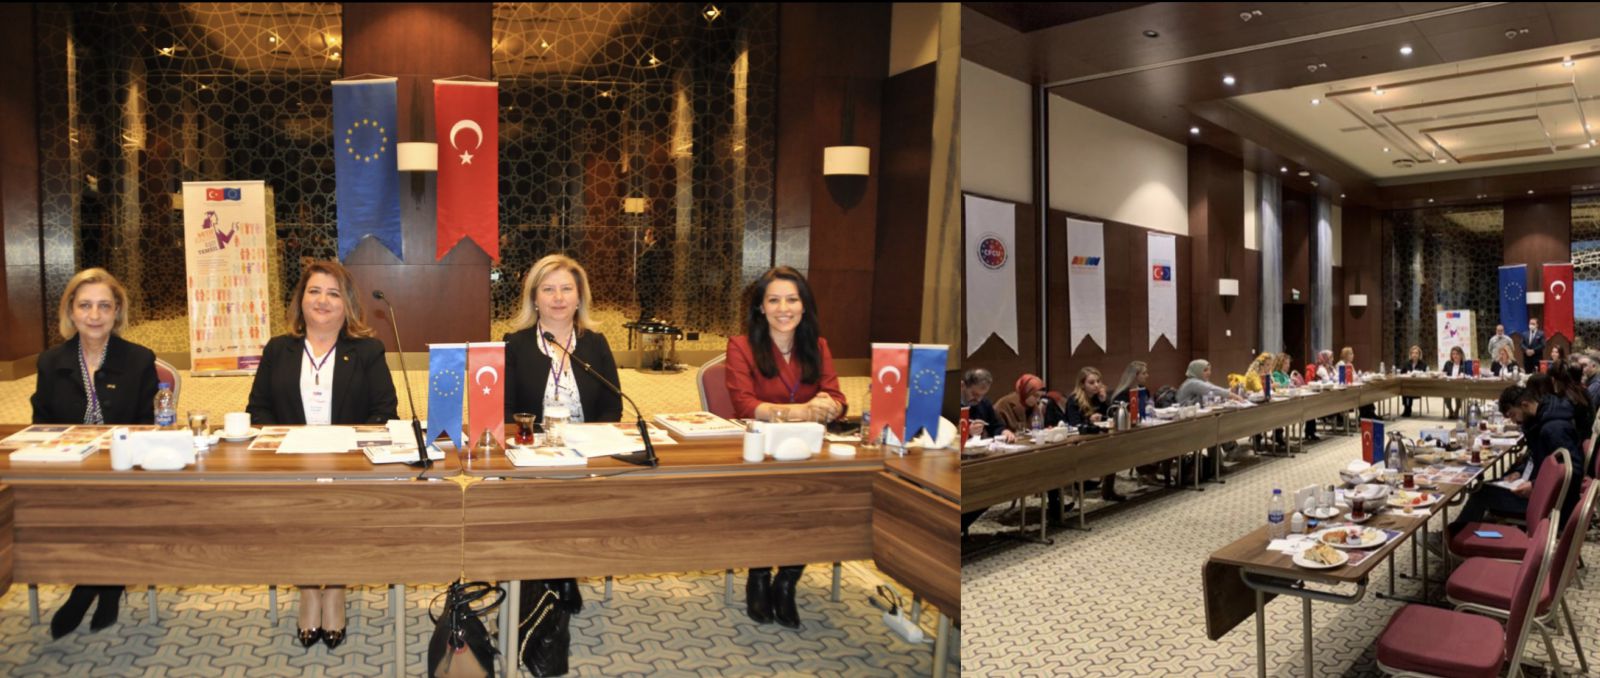 Federasyonumuzun üyesi olan KİKAD, Aktif Kadın Eşit Temsil Projesi Konya Basın toplantısını gerçekleştirdi.